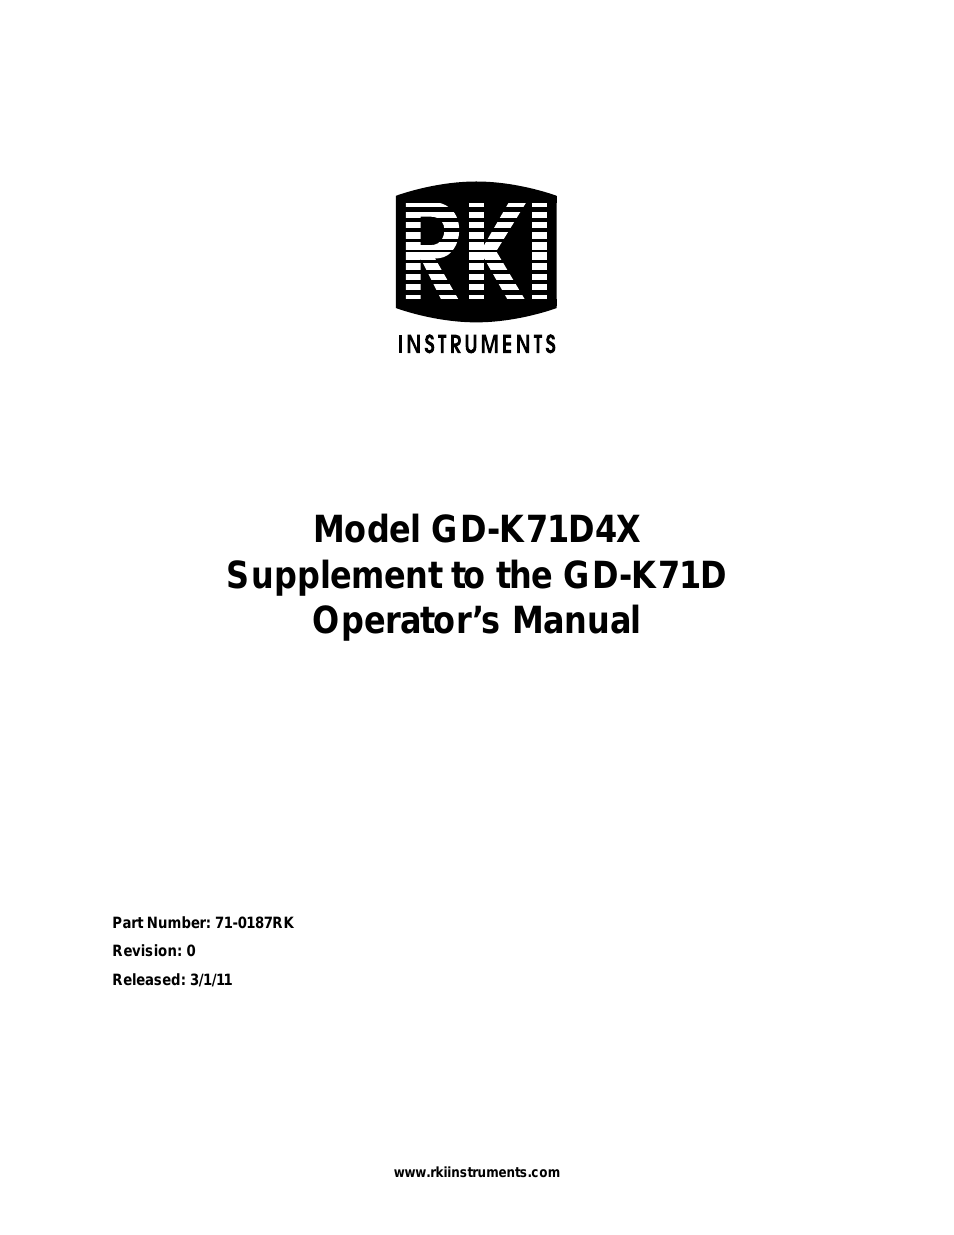 GD-K71D4X